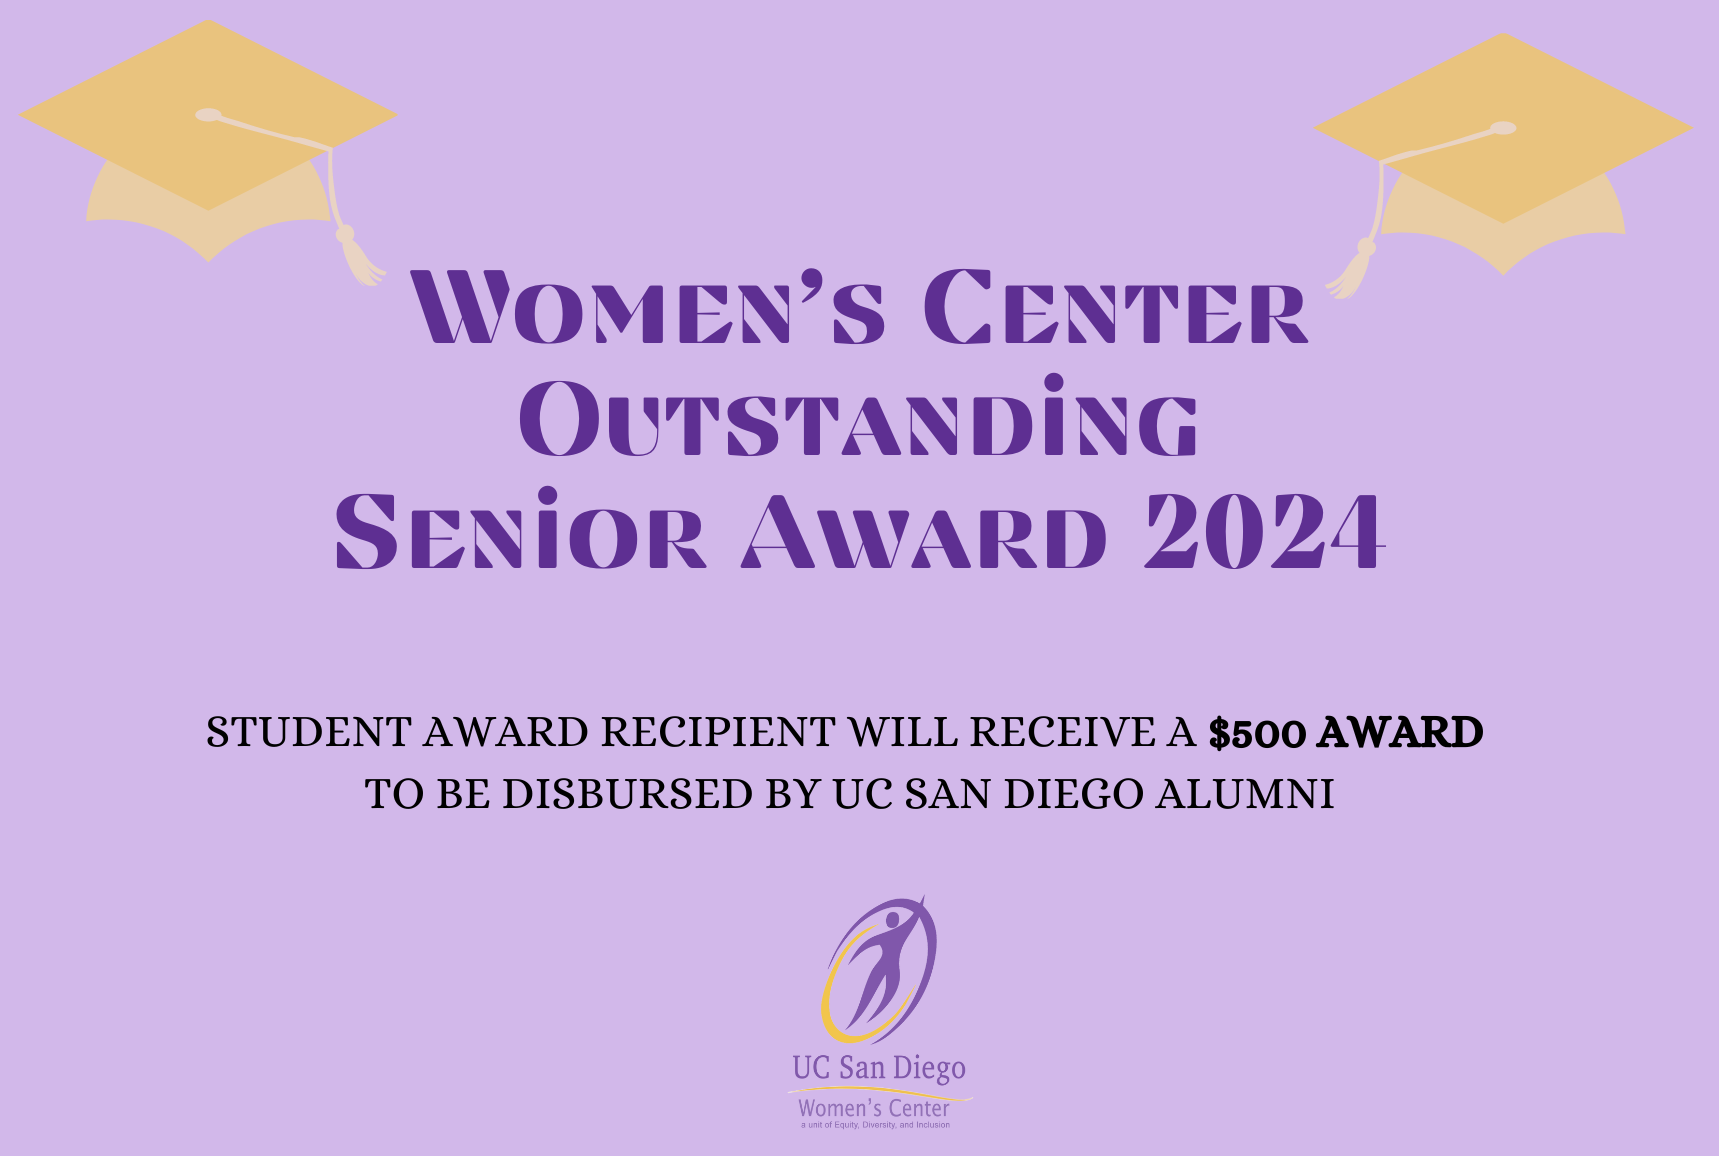 Women's Center Outstanding Senior Award 2023